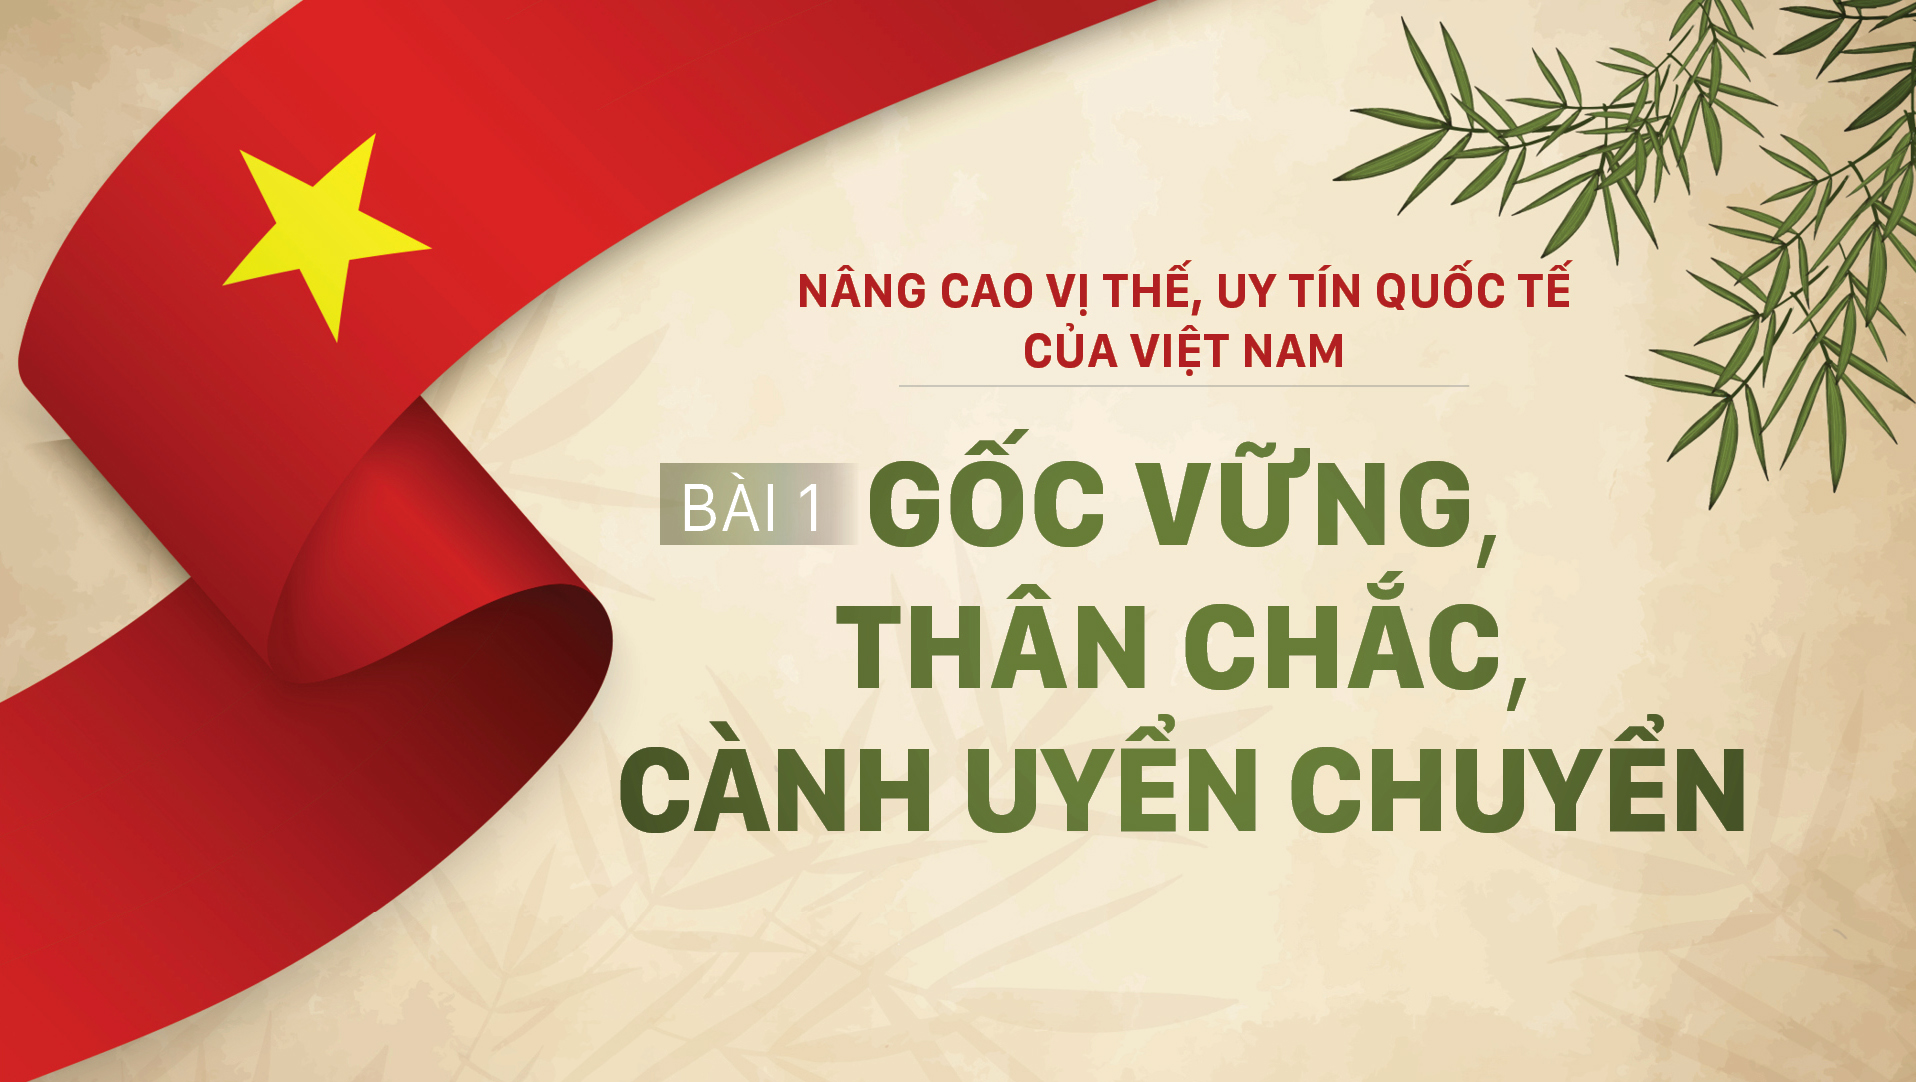 Nâng cao vị thế, uy tín quốc tế của Việt Nam - Bài 1: Gốc vững, thân chắc, cành uyển chuyển